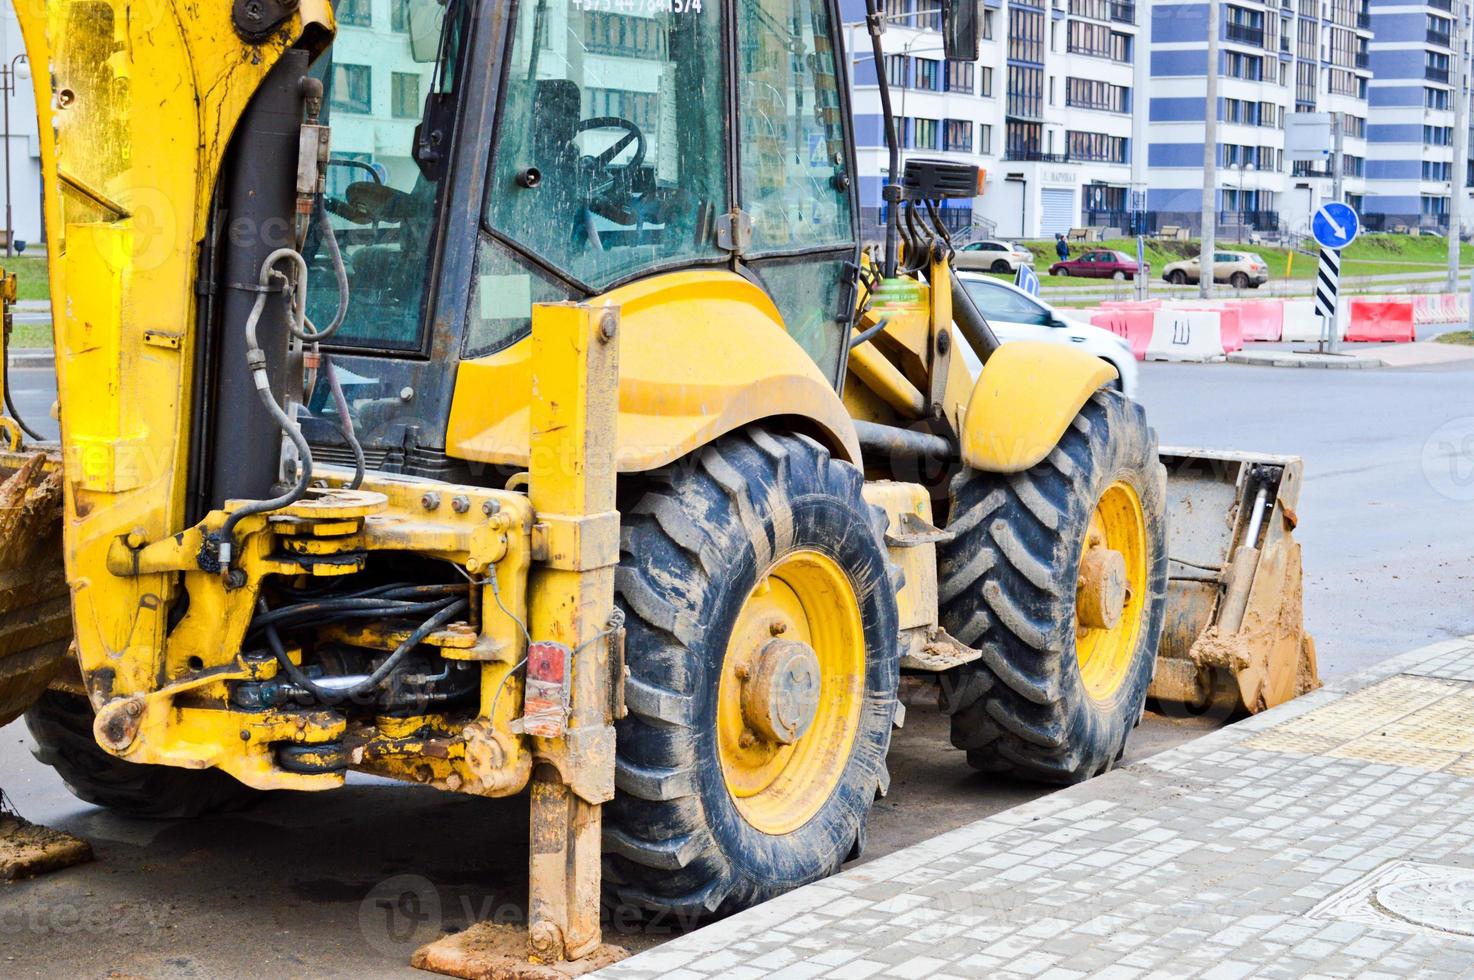 grande trator de escavadeira pesada industrial amarelo brilhante, bulldozer, equipamento de construção especializado para reparo de estradas durante a construção de um novo microdistrito em uma cidade grande foto